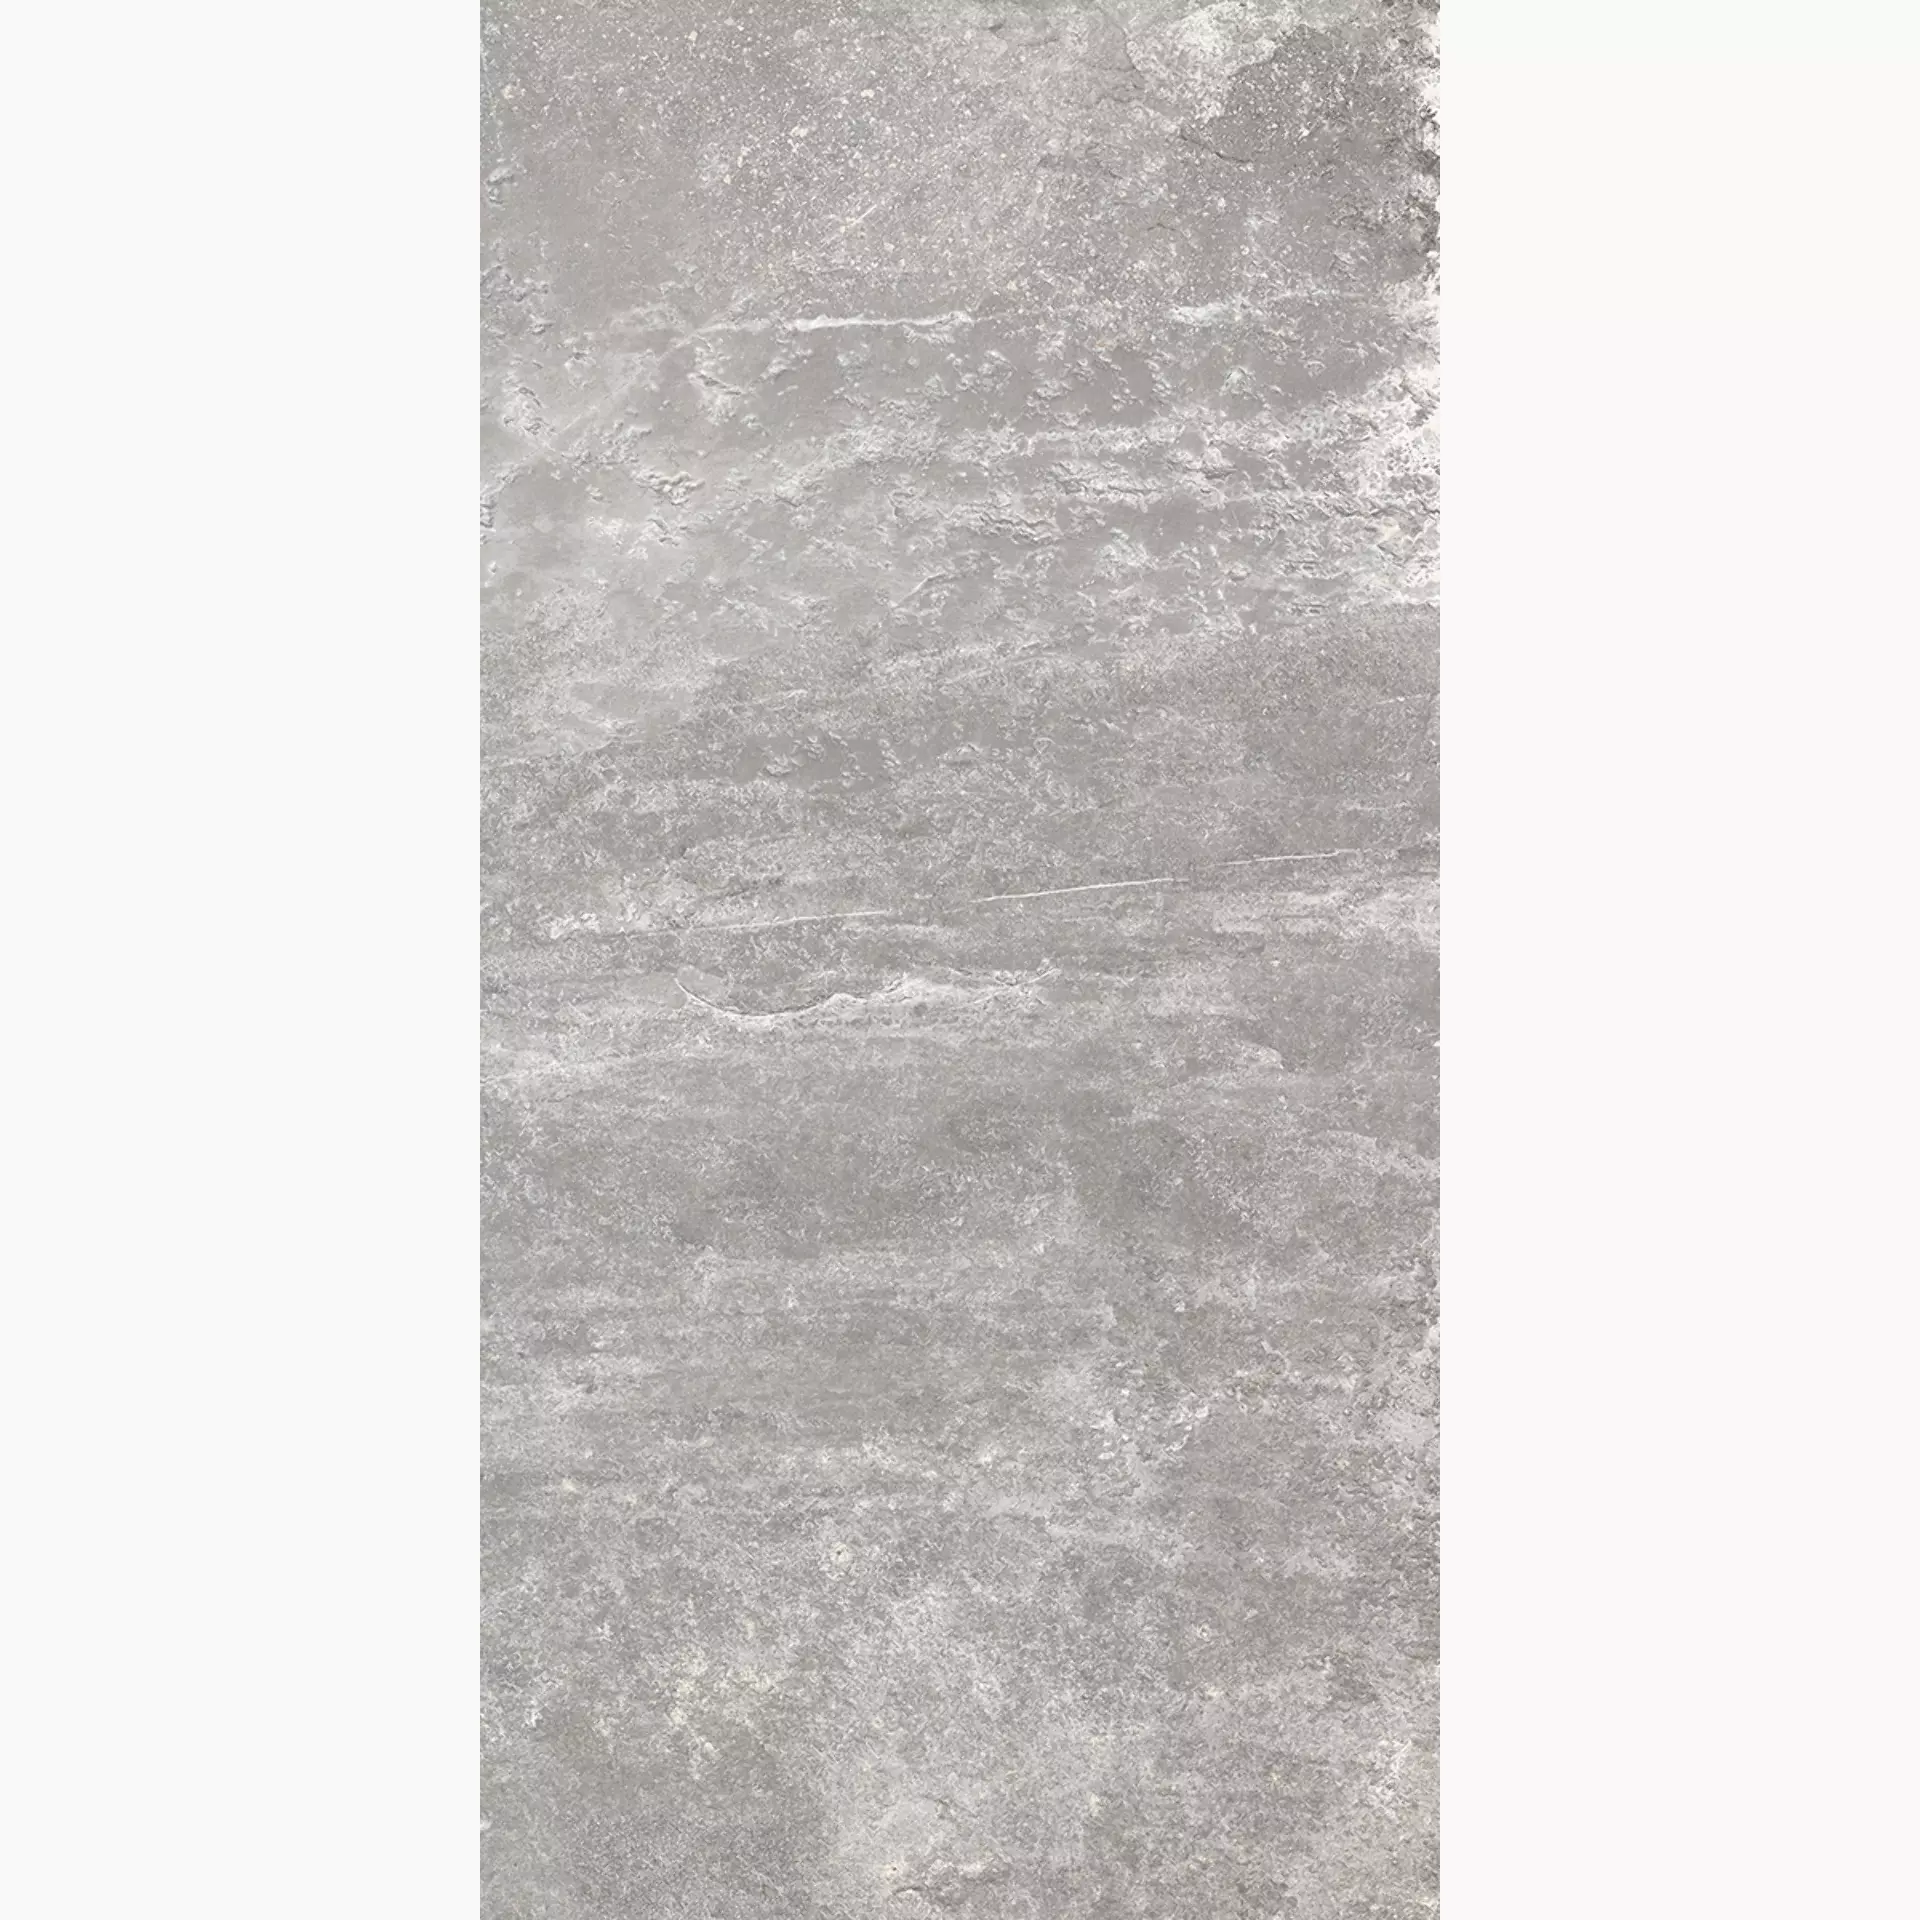 Rondine Ardesie Grey Naturale J86996 30,5x60,5cm 8,5mm